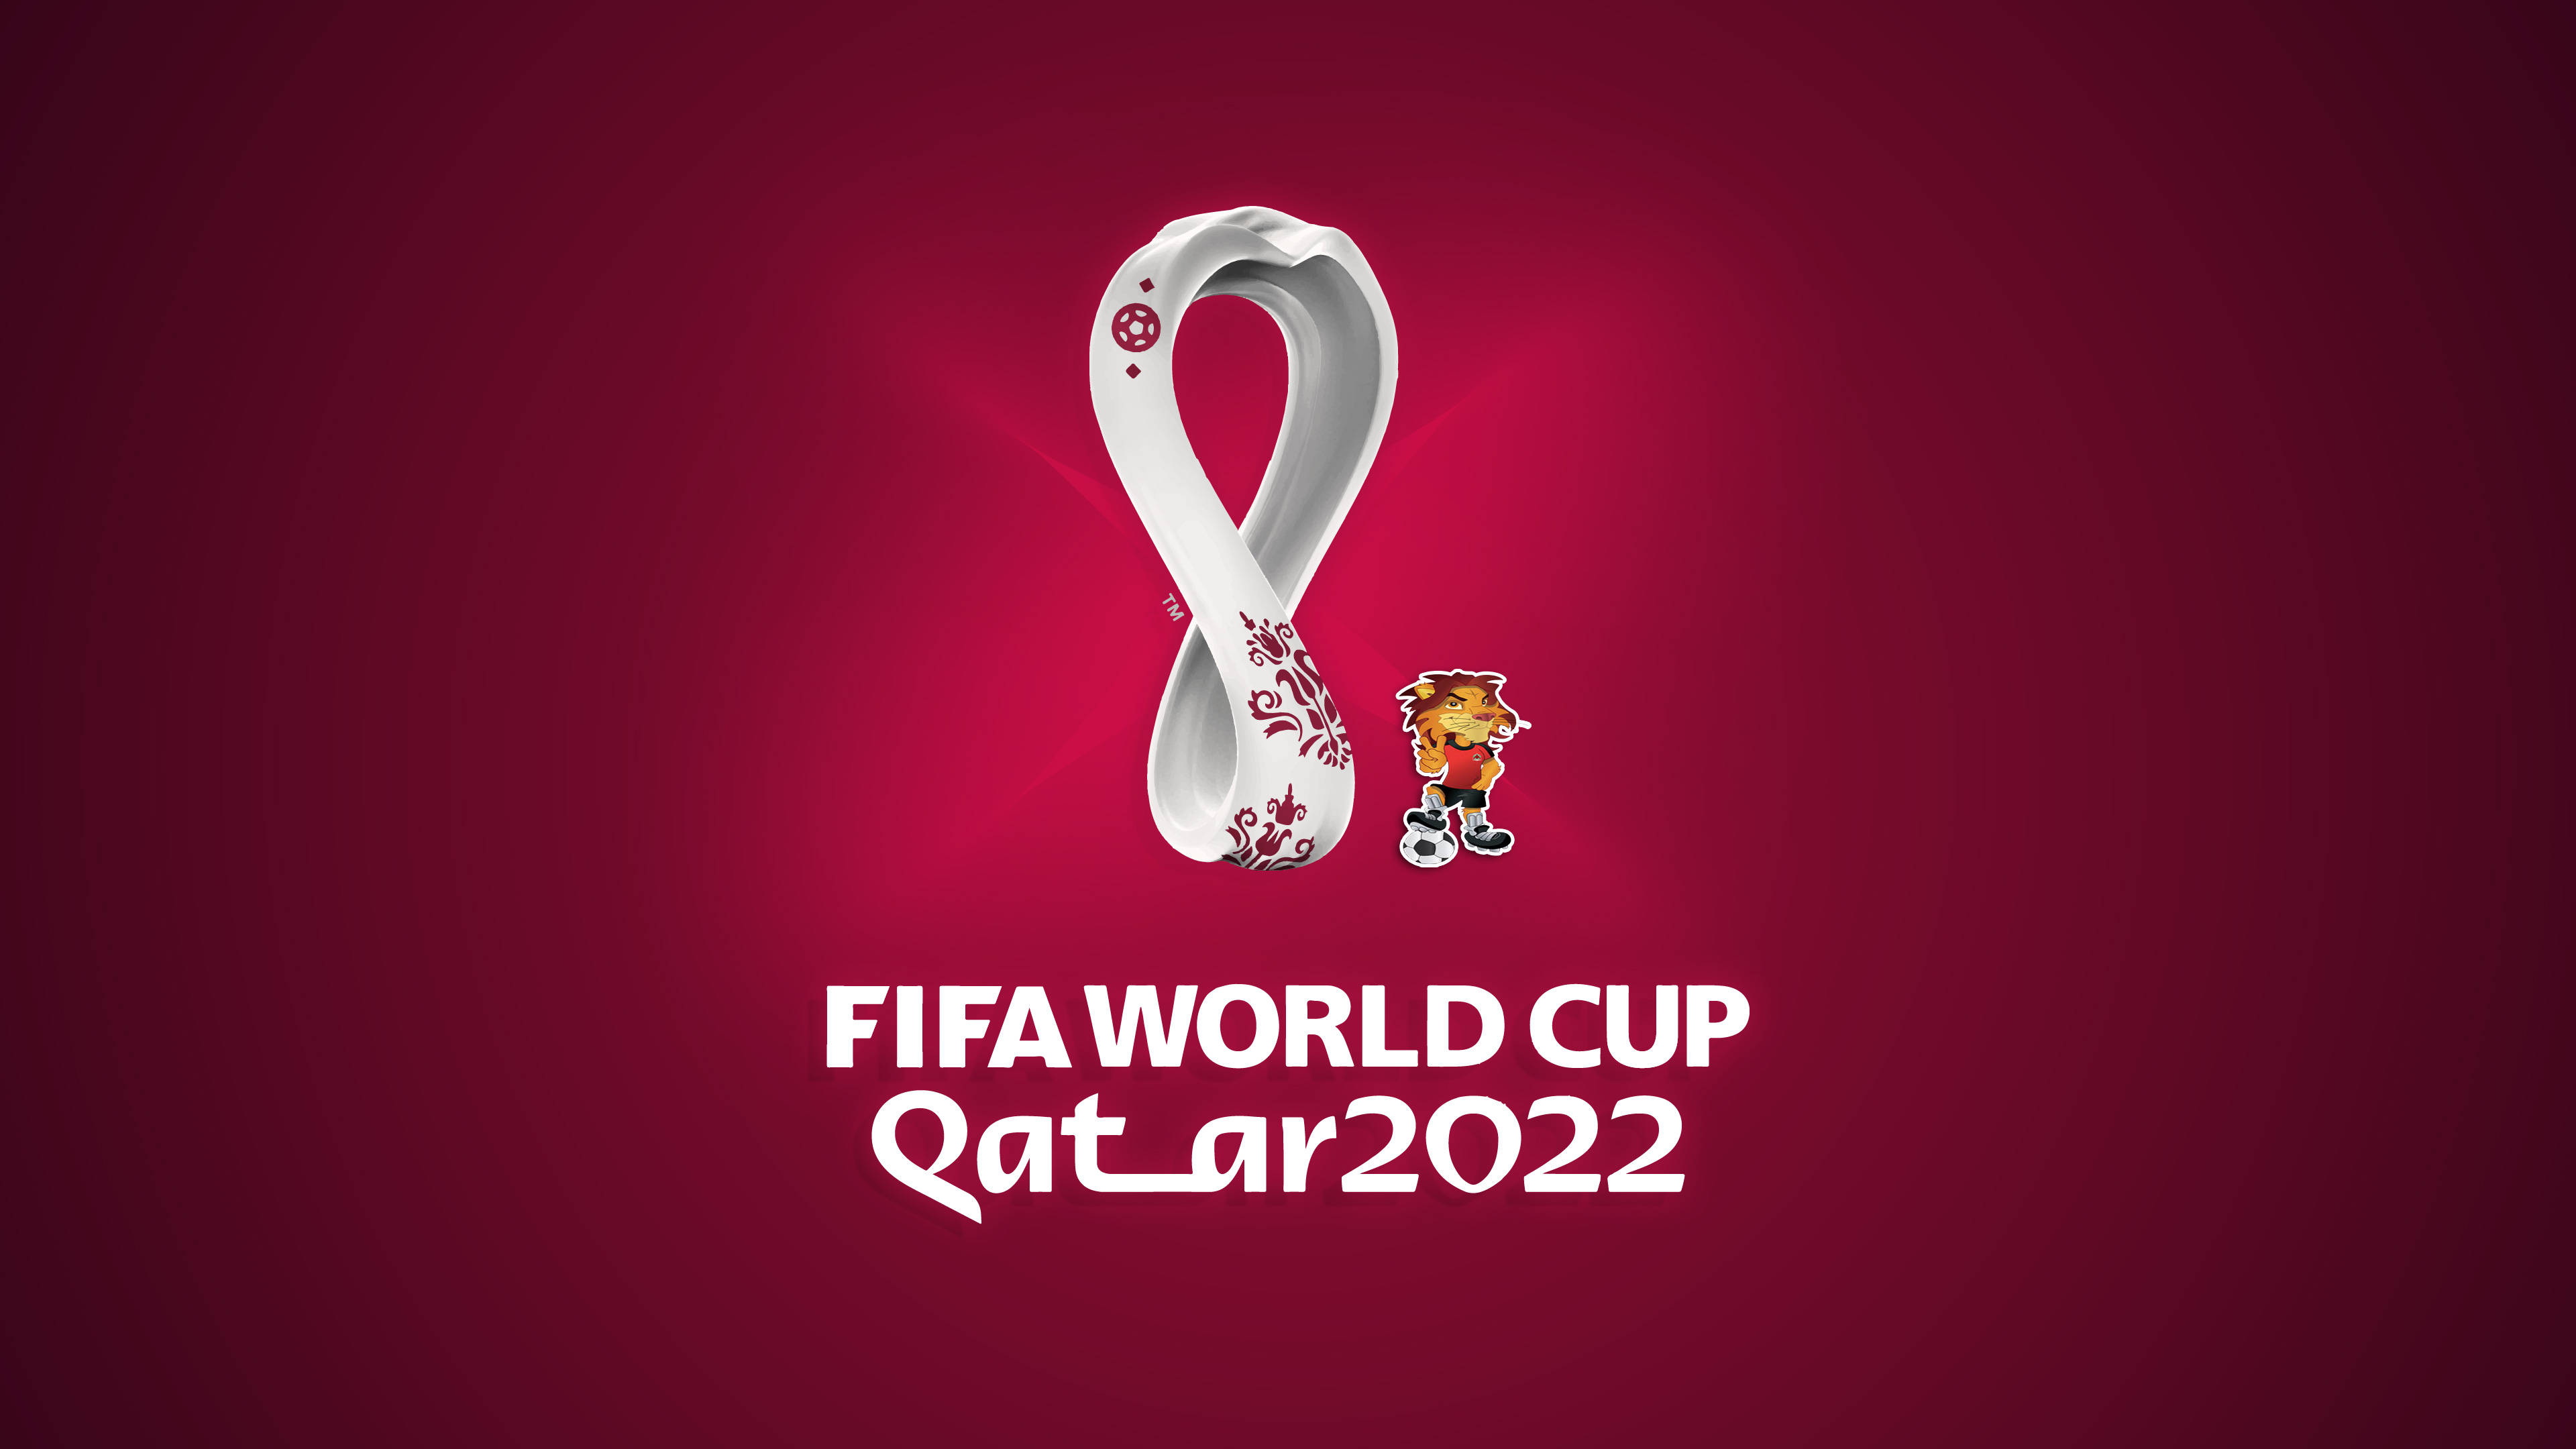 FIFA World Cup Qatar 2022 005 Mistrzostwa Swiata w Pilce Noznej Katar 2022, Logo